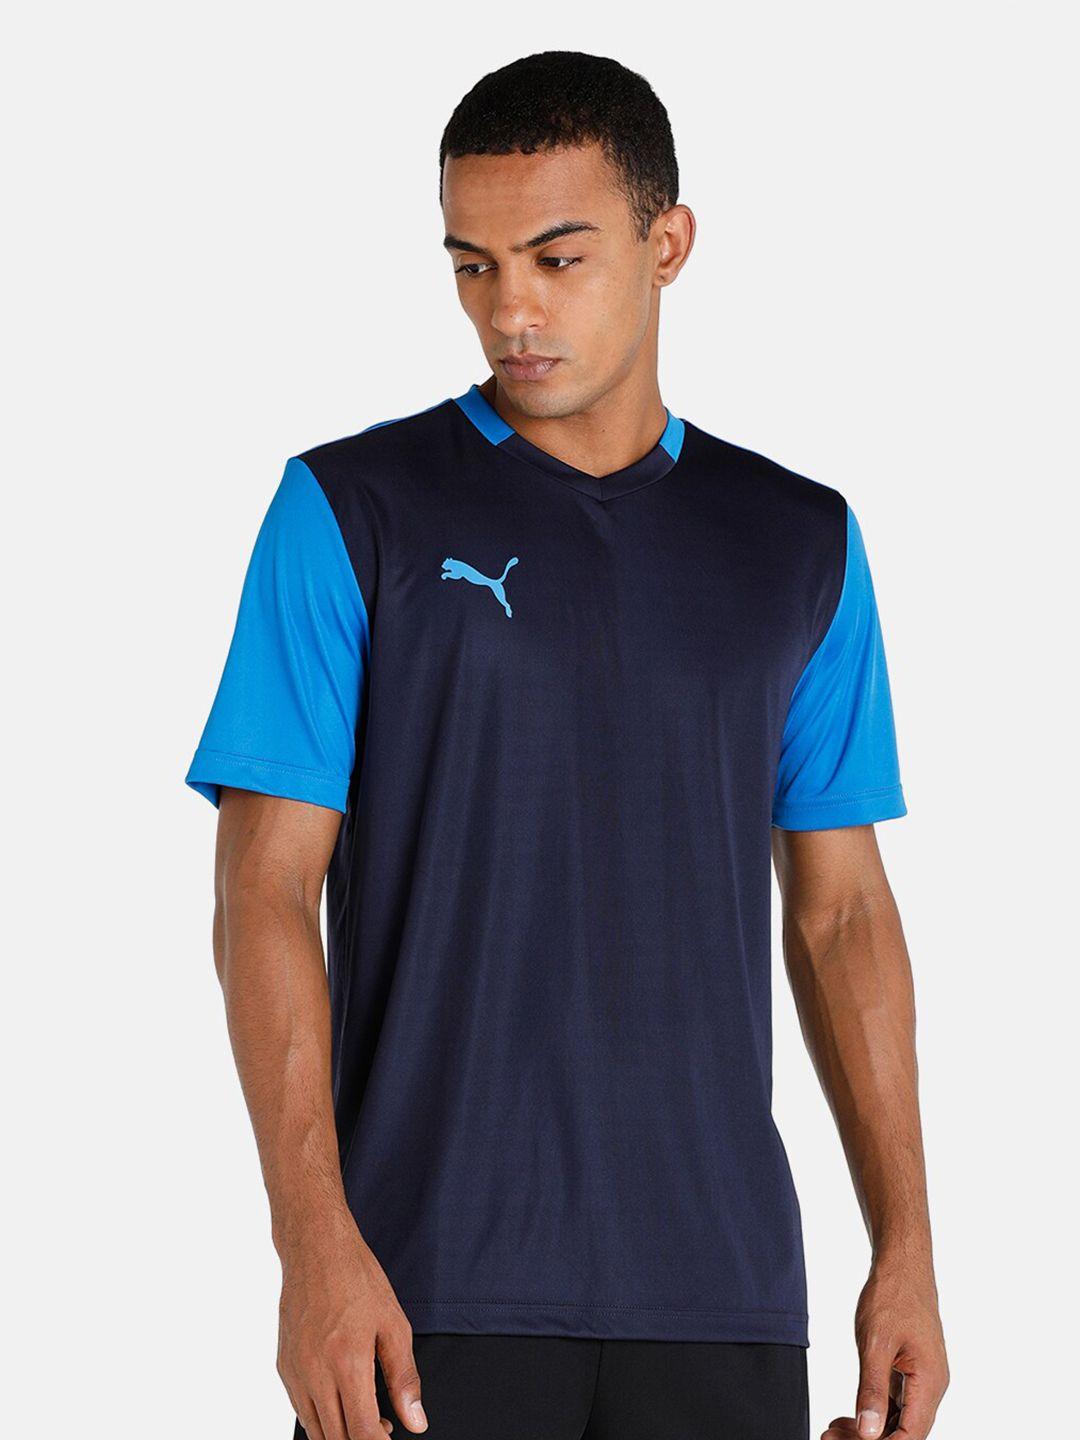 puma men blue & navy blue colourblocked v-neck t-shirt